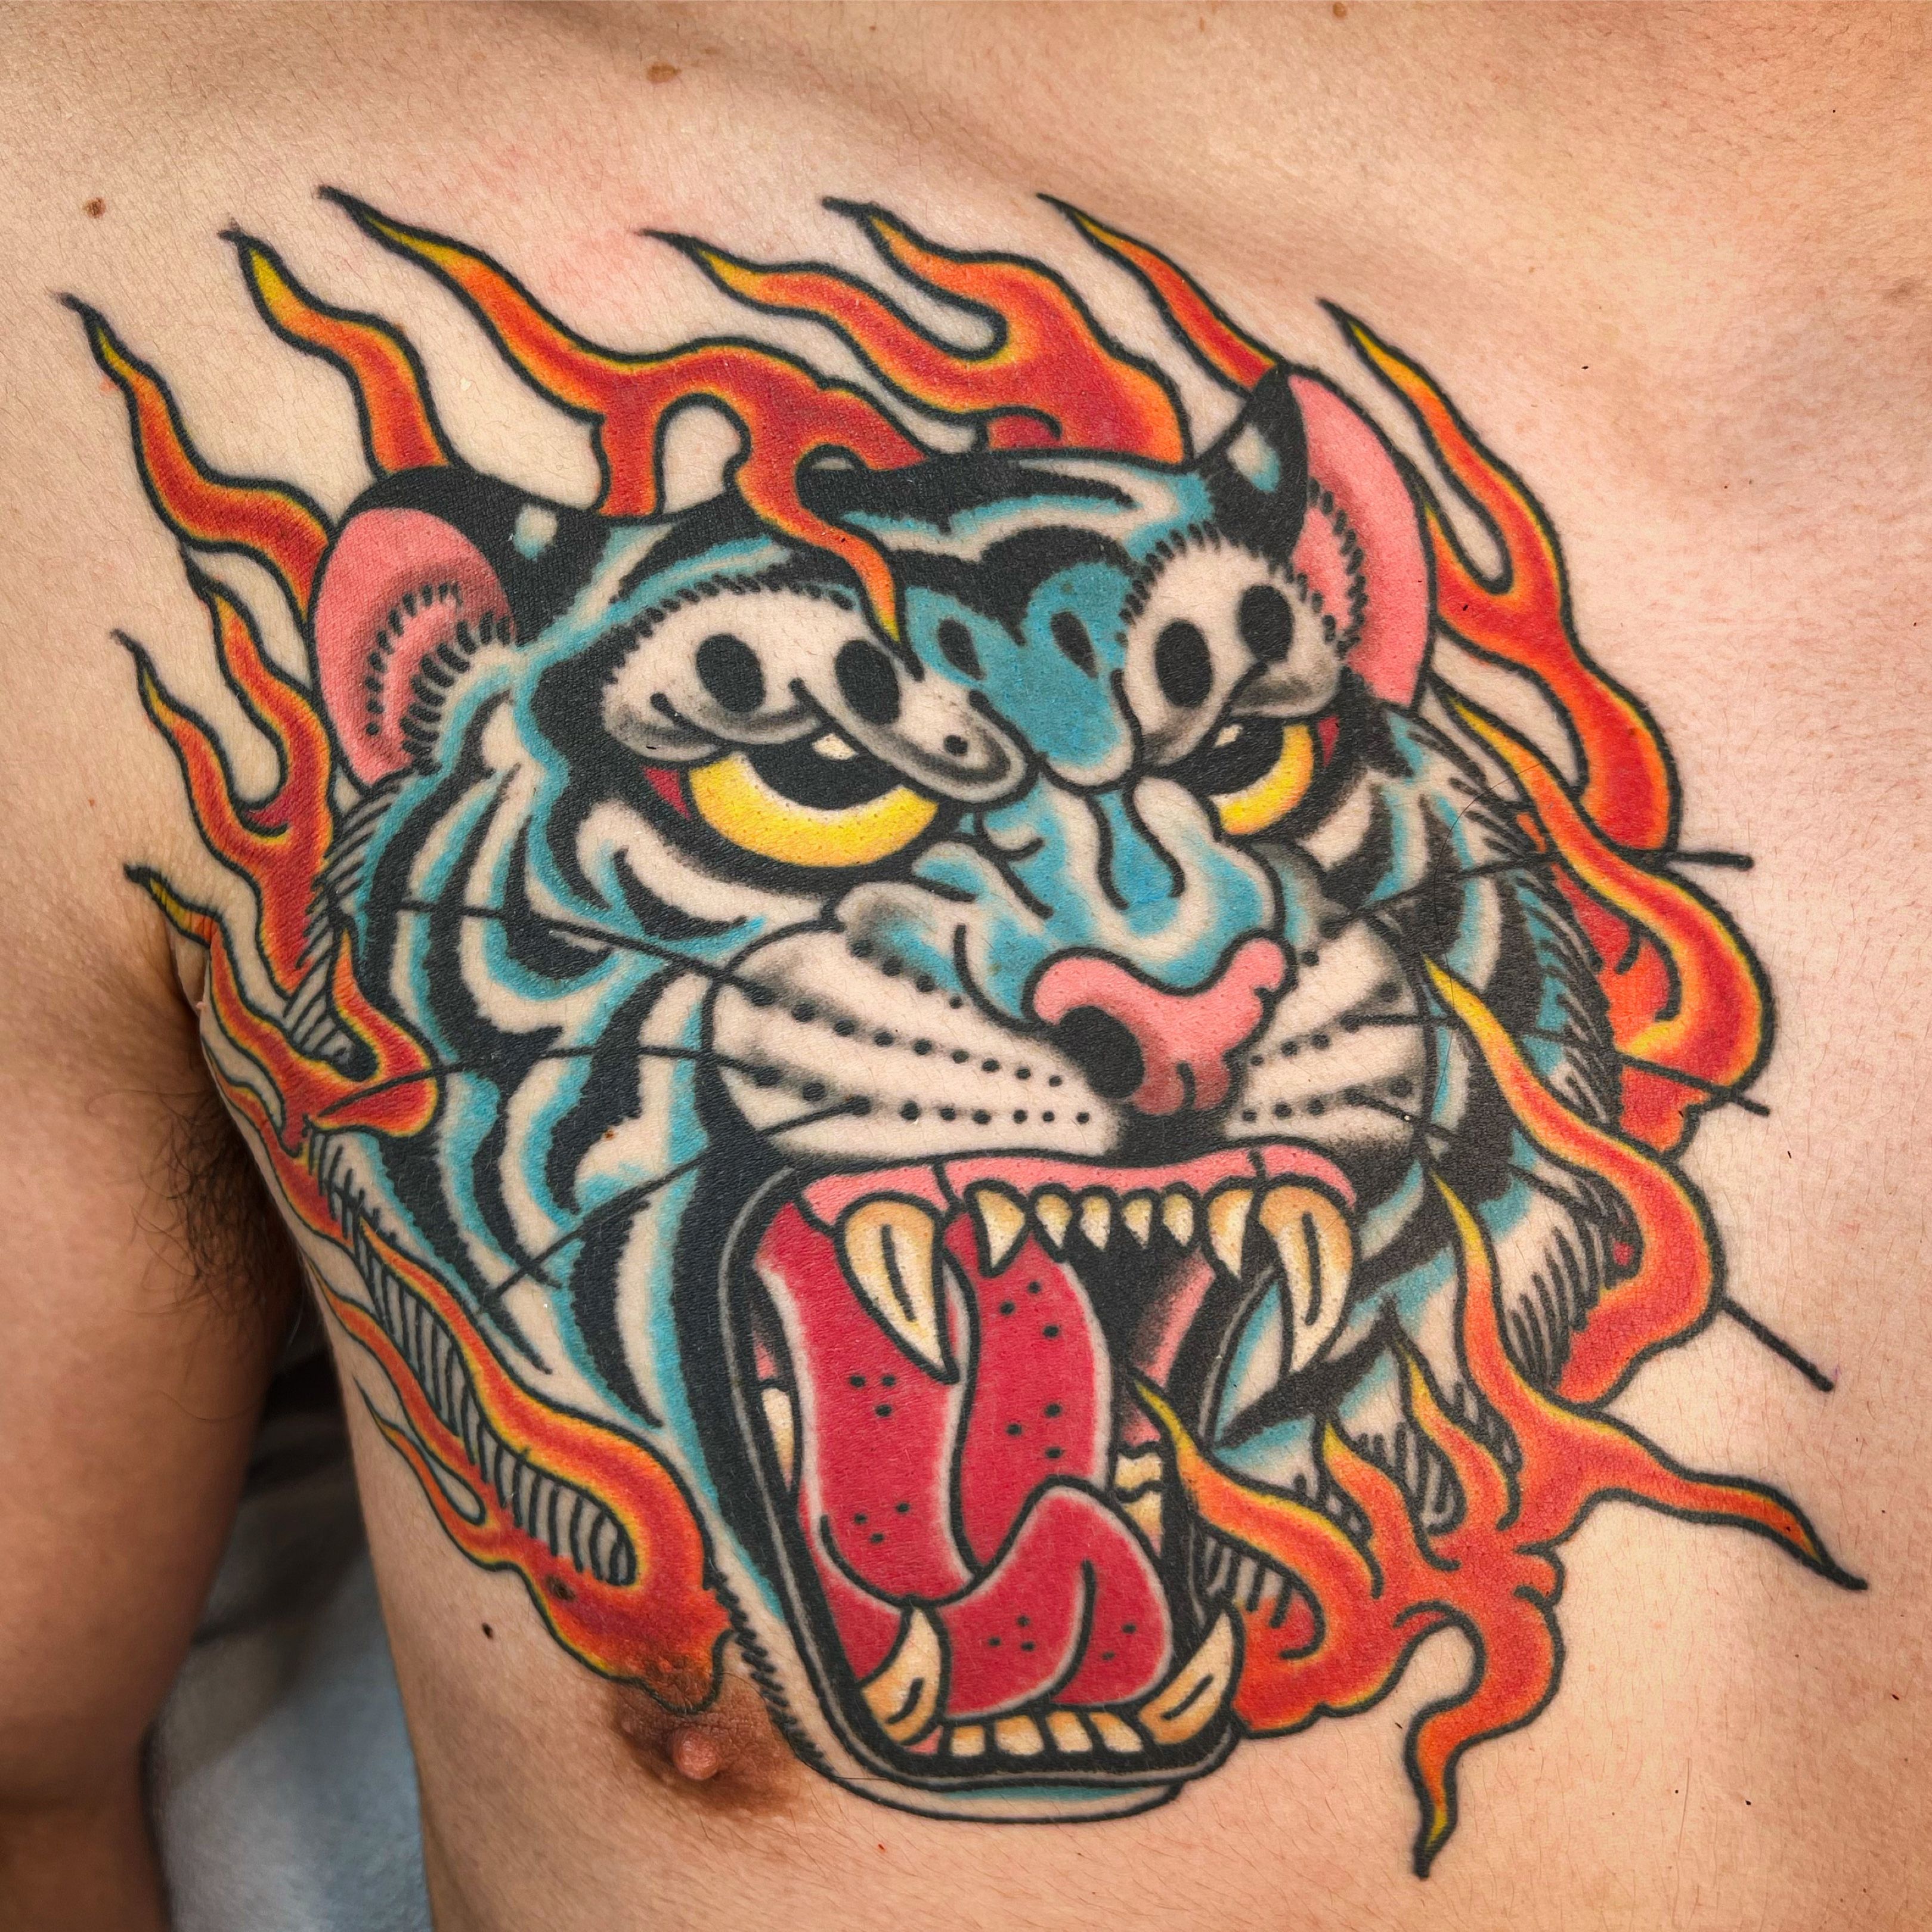 20 sheets faketramp Halloween men tiger spider temporary tattoo | eBay